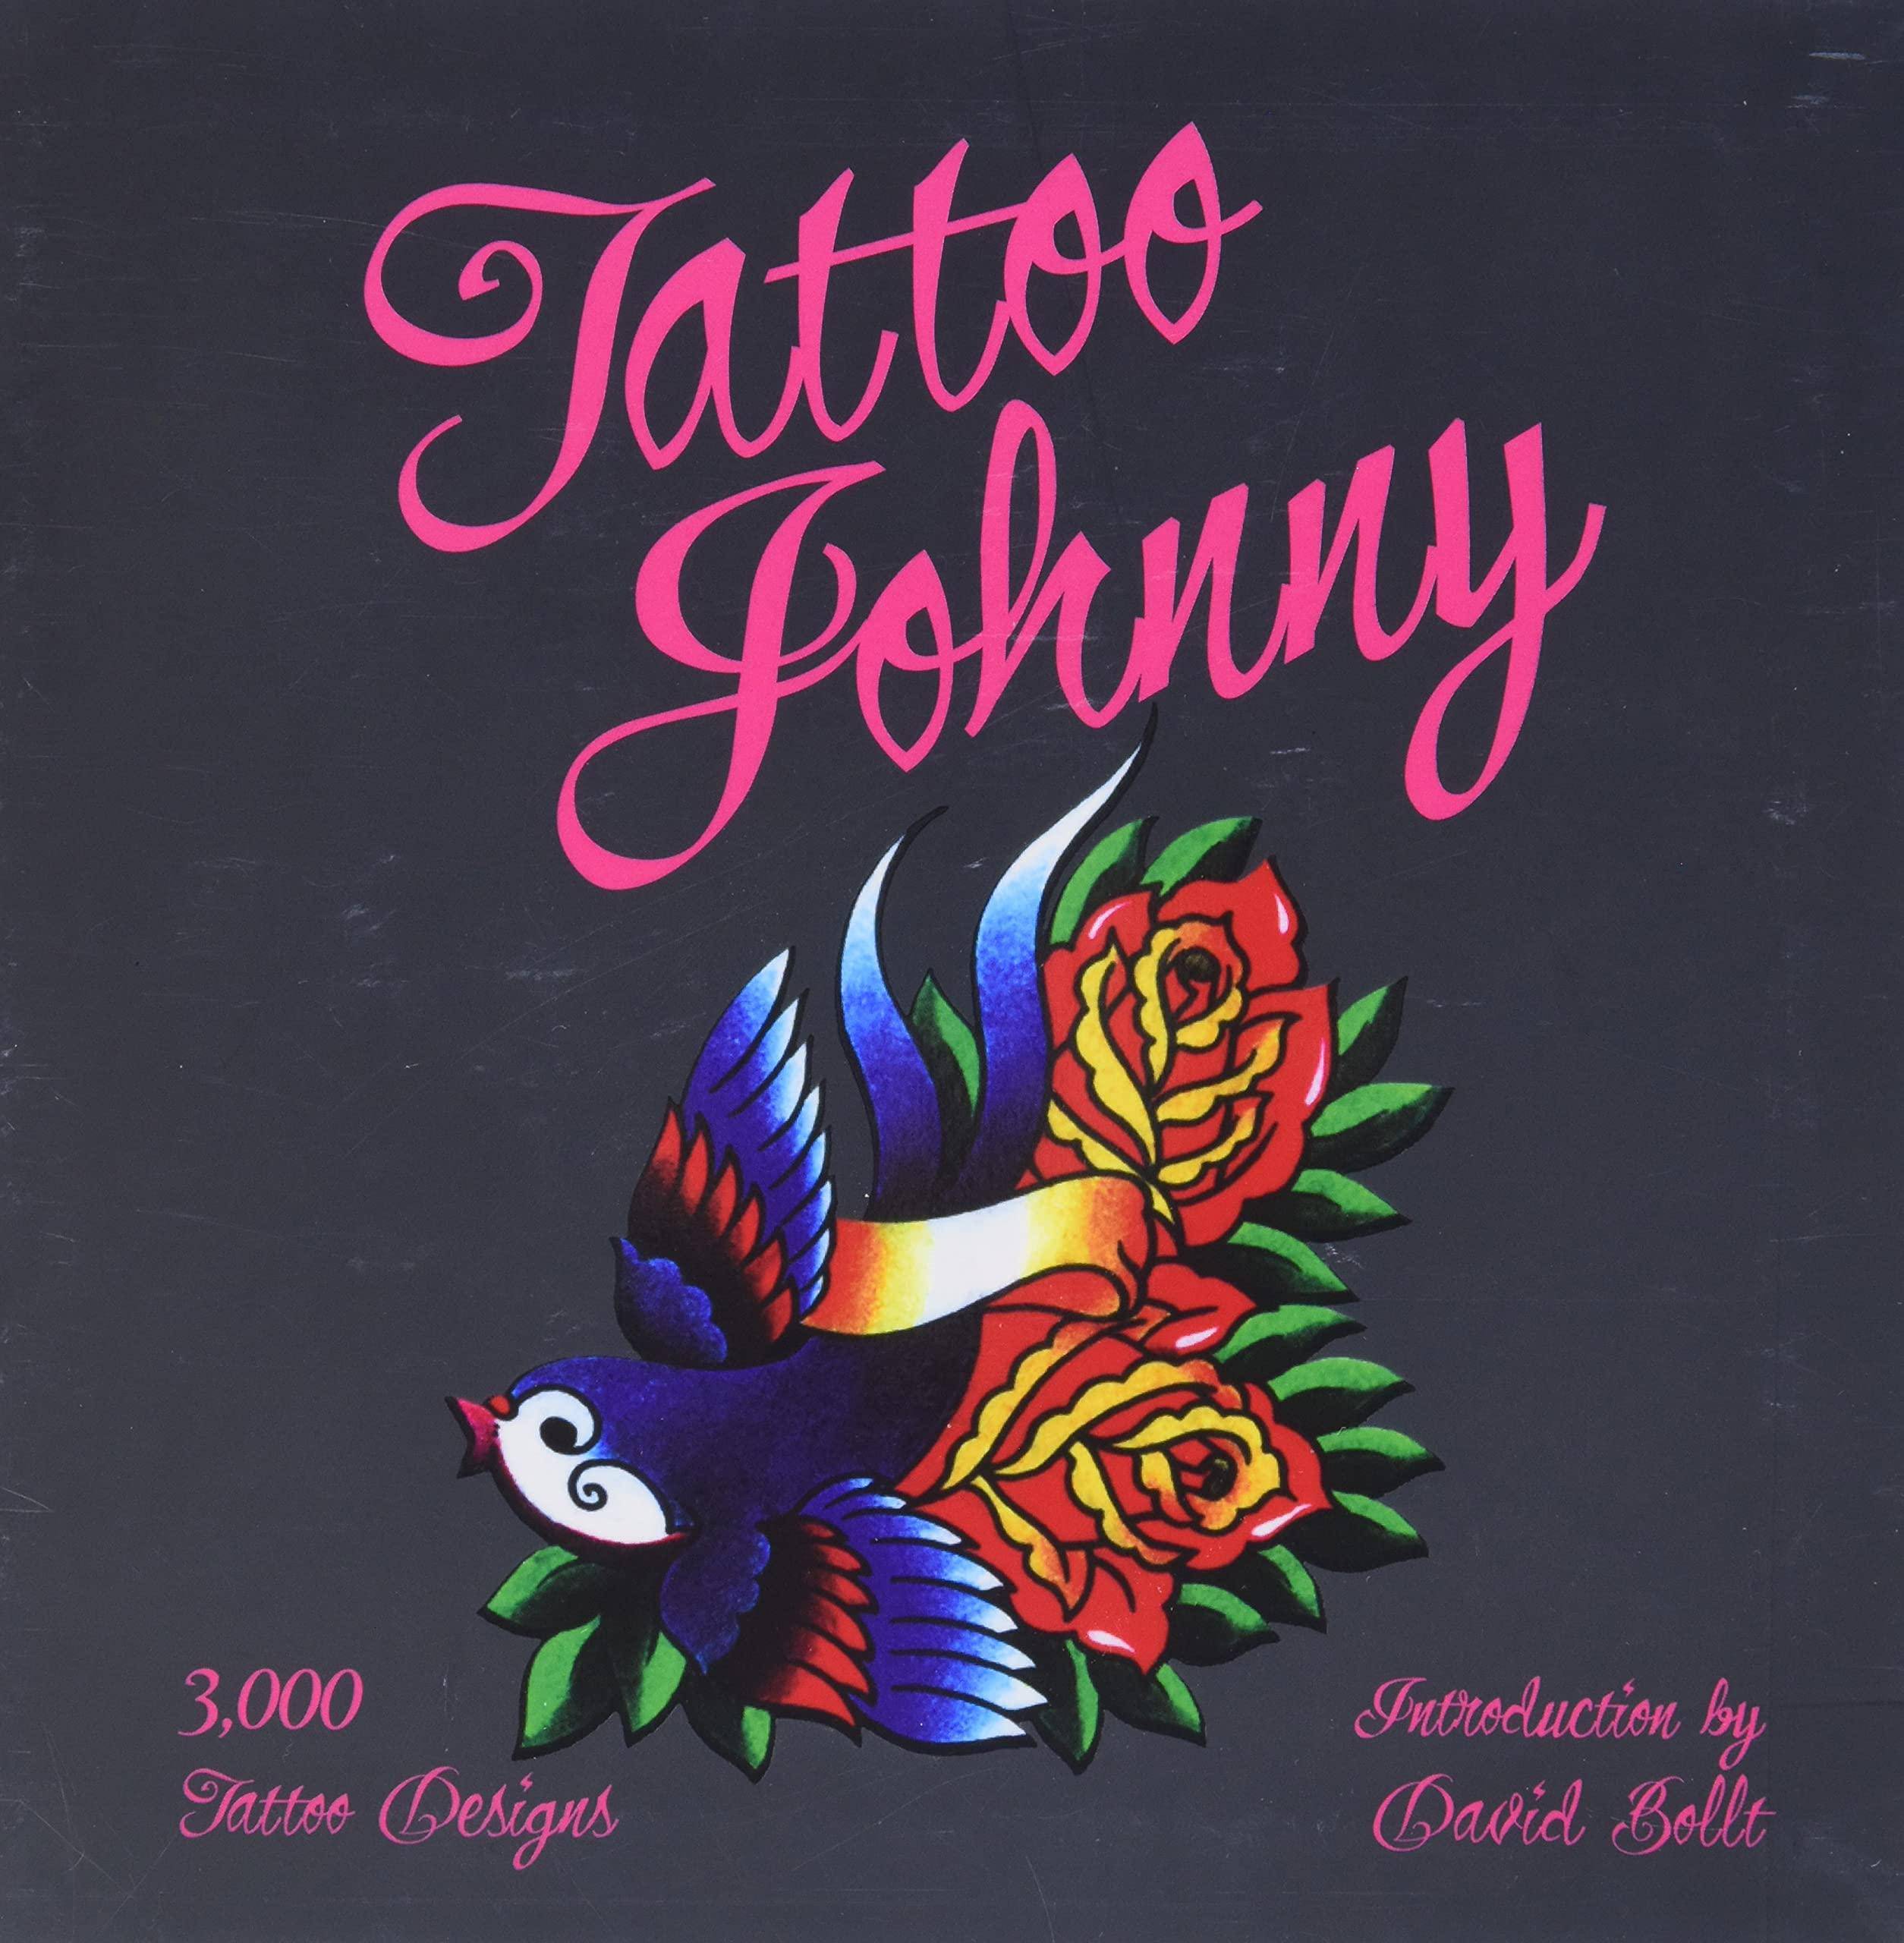 Tattoo Johnny: 3,000 Tattoo Designs - SureShot Books Publishing LLC